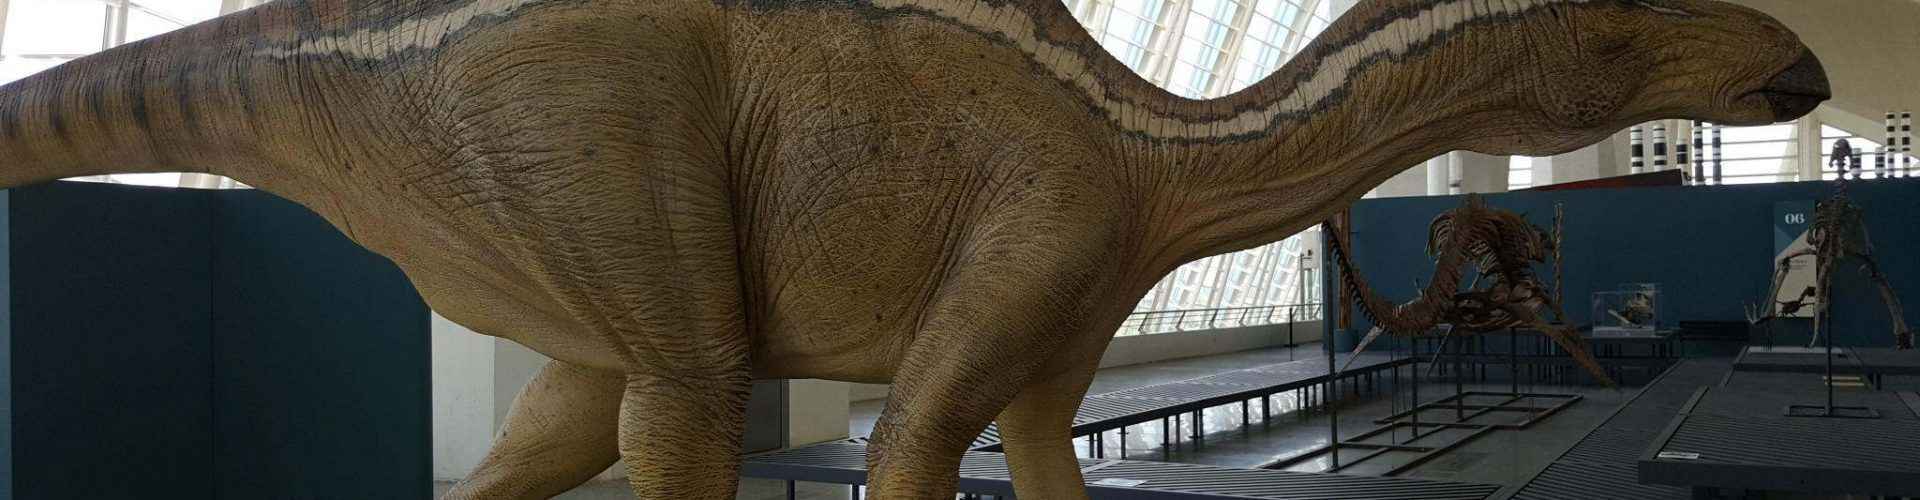 Morella recuperará restos de dinosaurios y la maqueta del Morelladon –  Vinaròs News